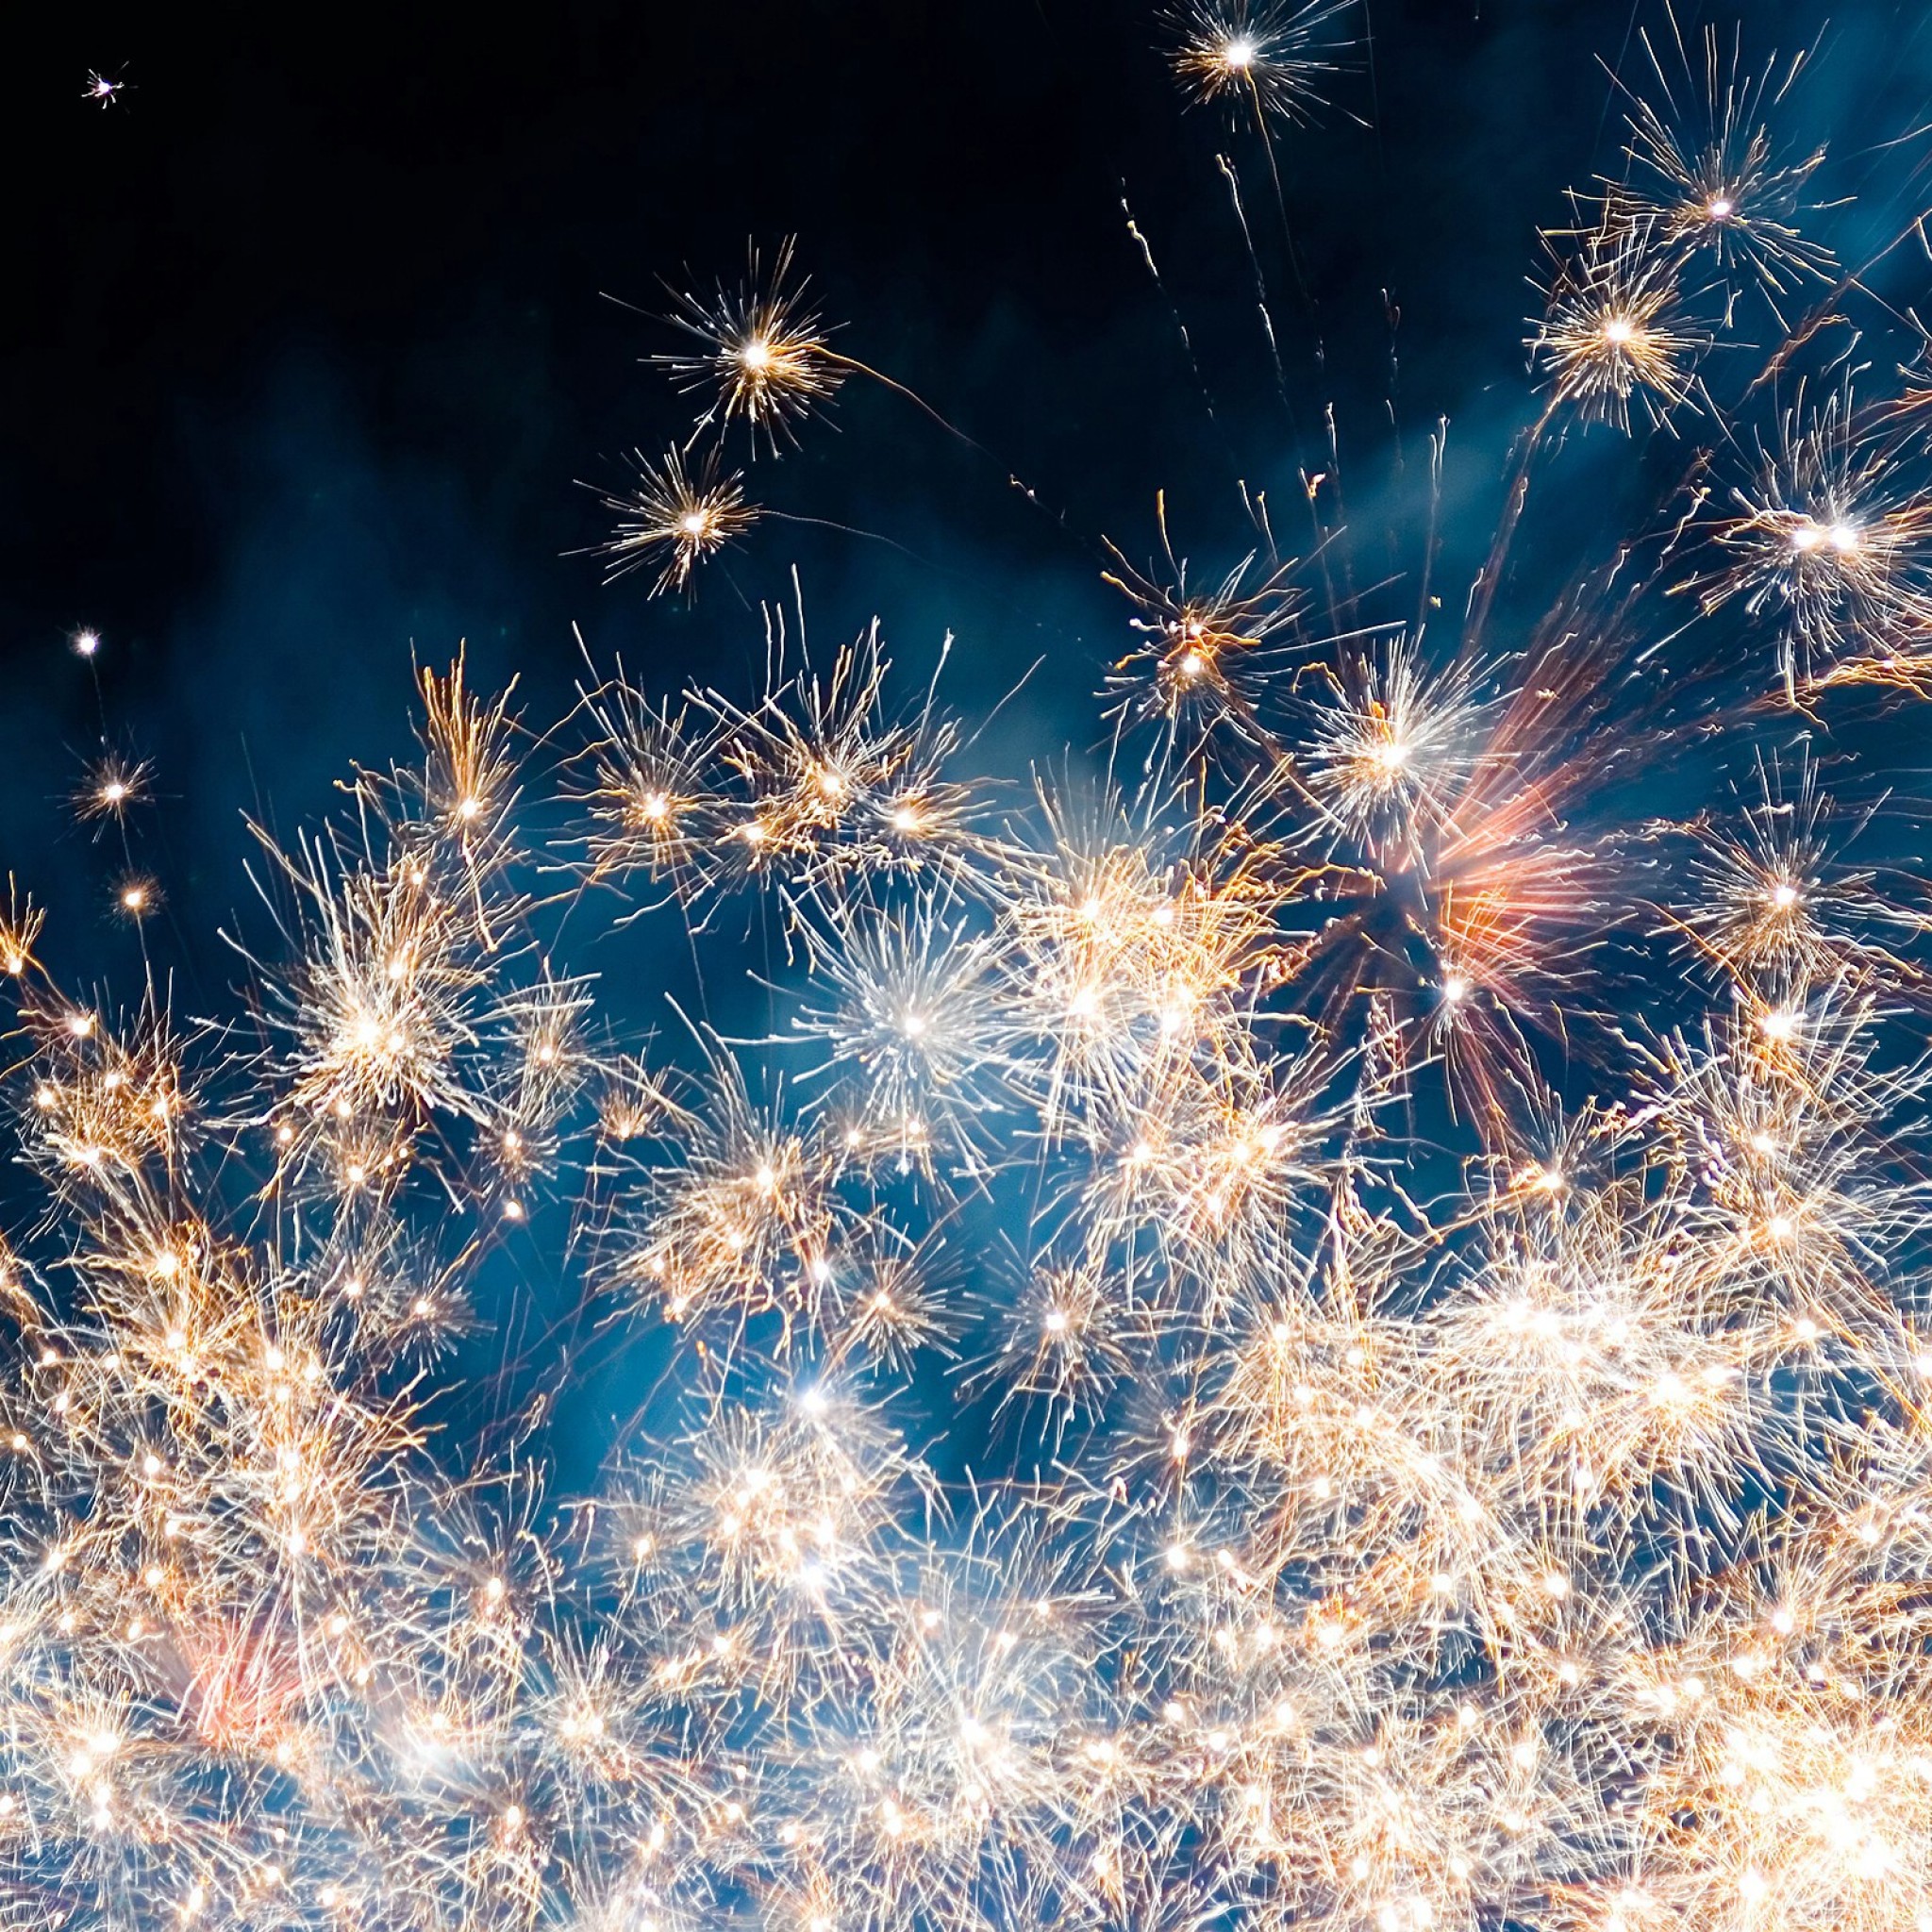 Fireworks iPad Air Wallpaper Free Download